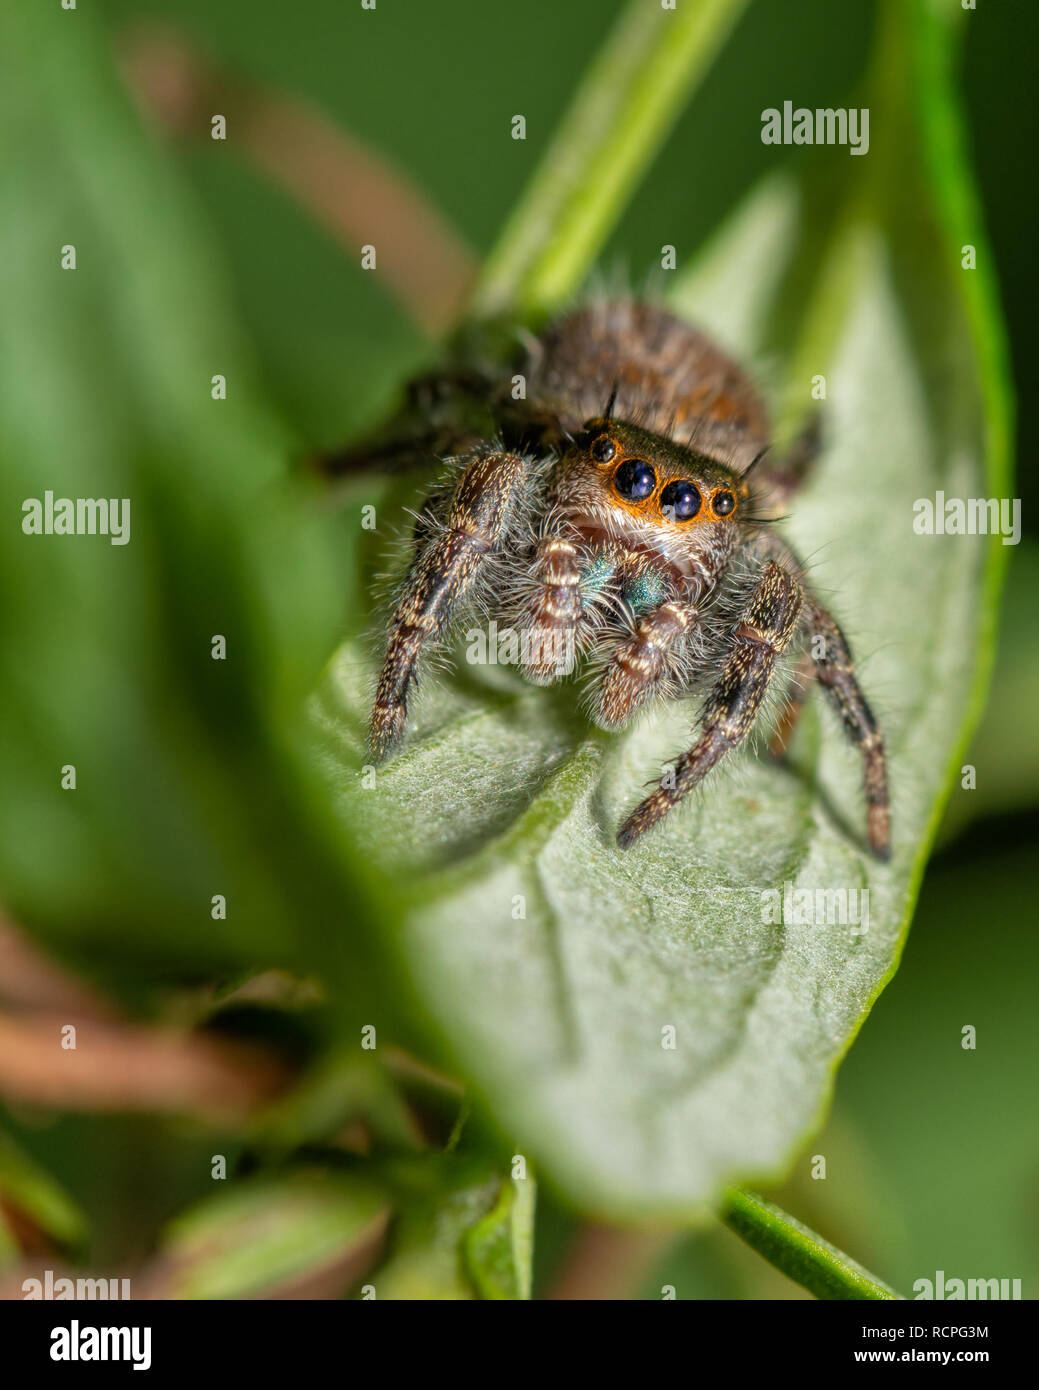 Adorable Phidippus princeps, gewundenen Getuftete Jumping spider sitzt auf einem Blatt im Herbst Garten, mit Blick auf den Betrachter mit Neugier Stockfoto